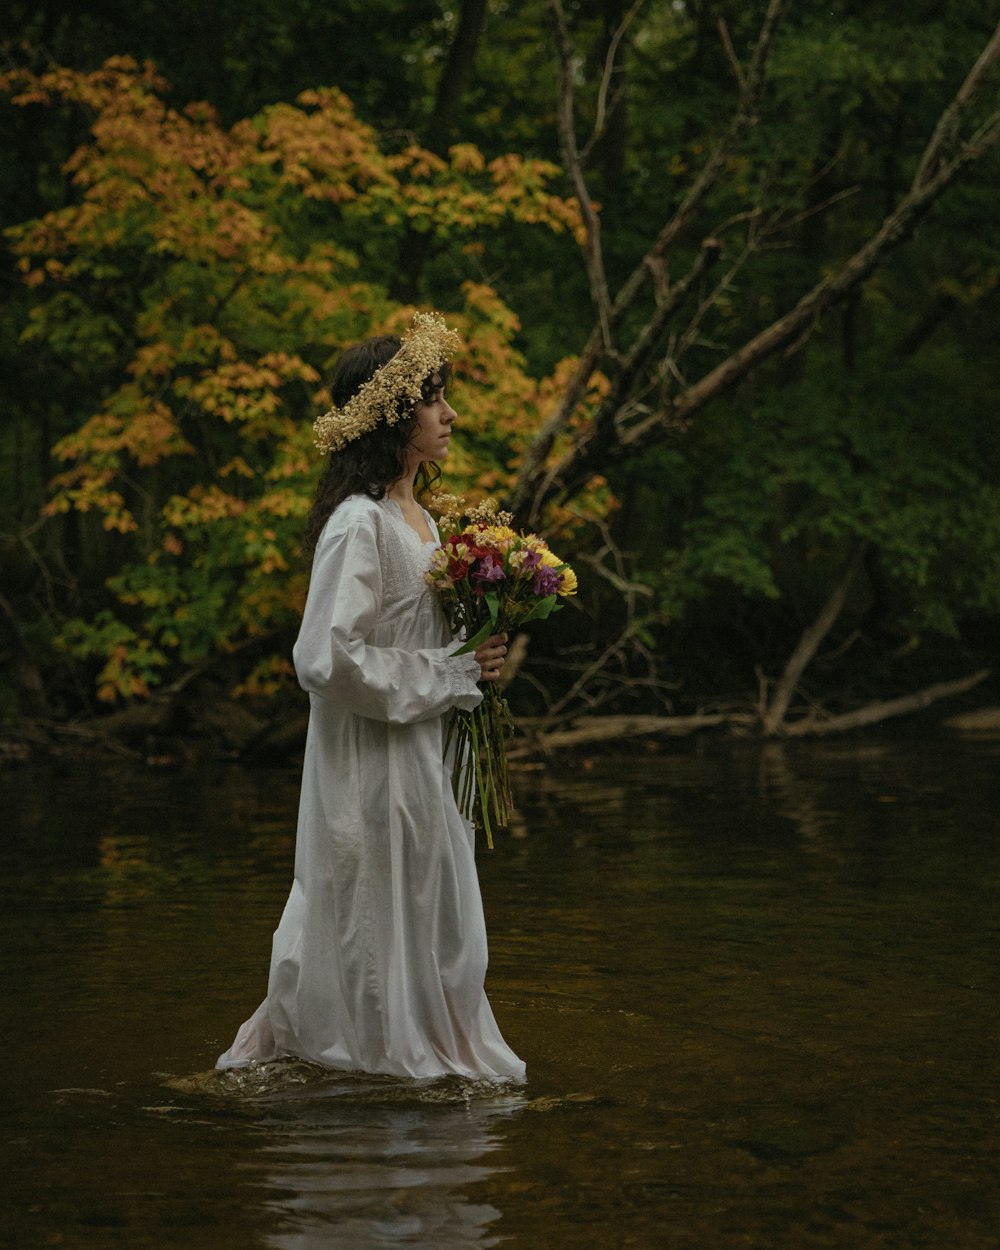 Una donna in un vestito bianco in piedi in un fiume